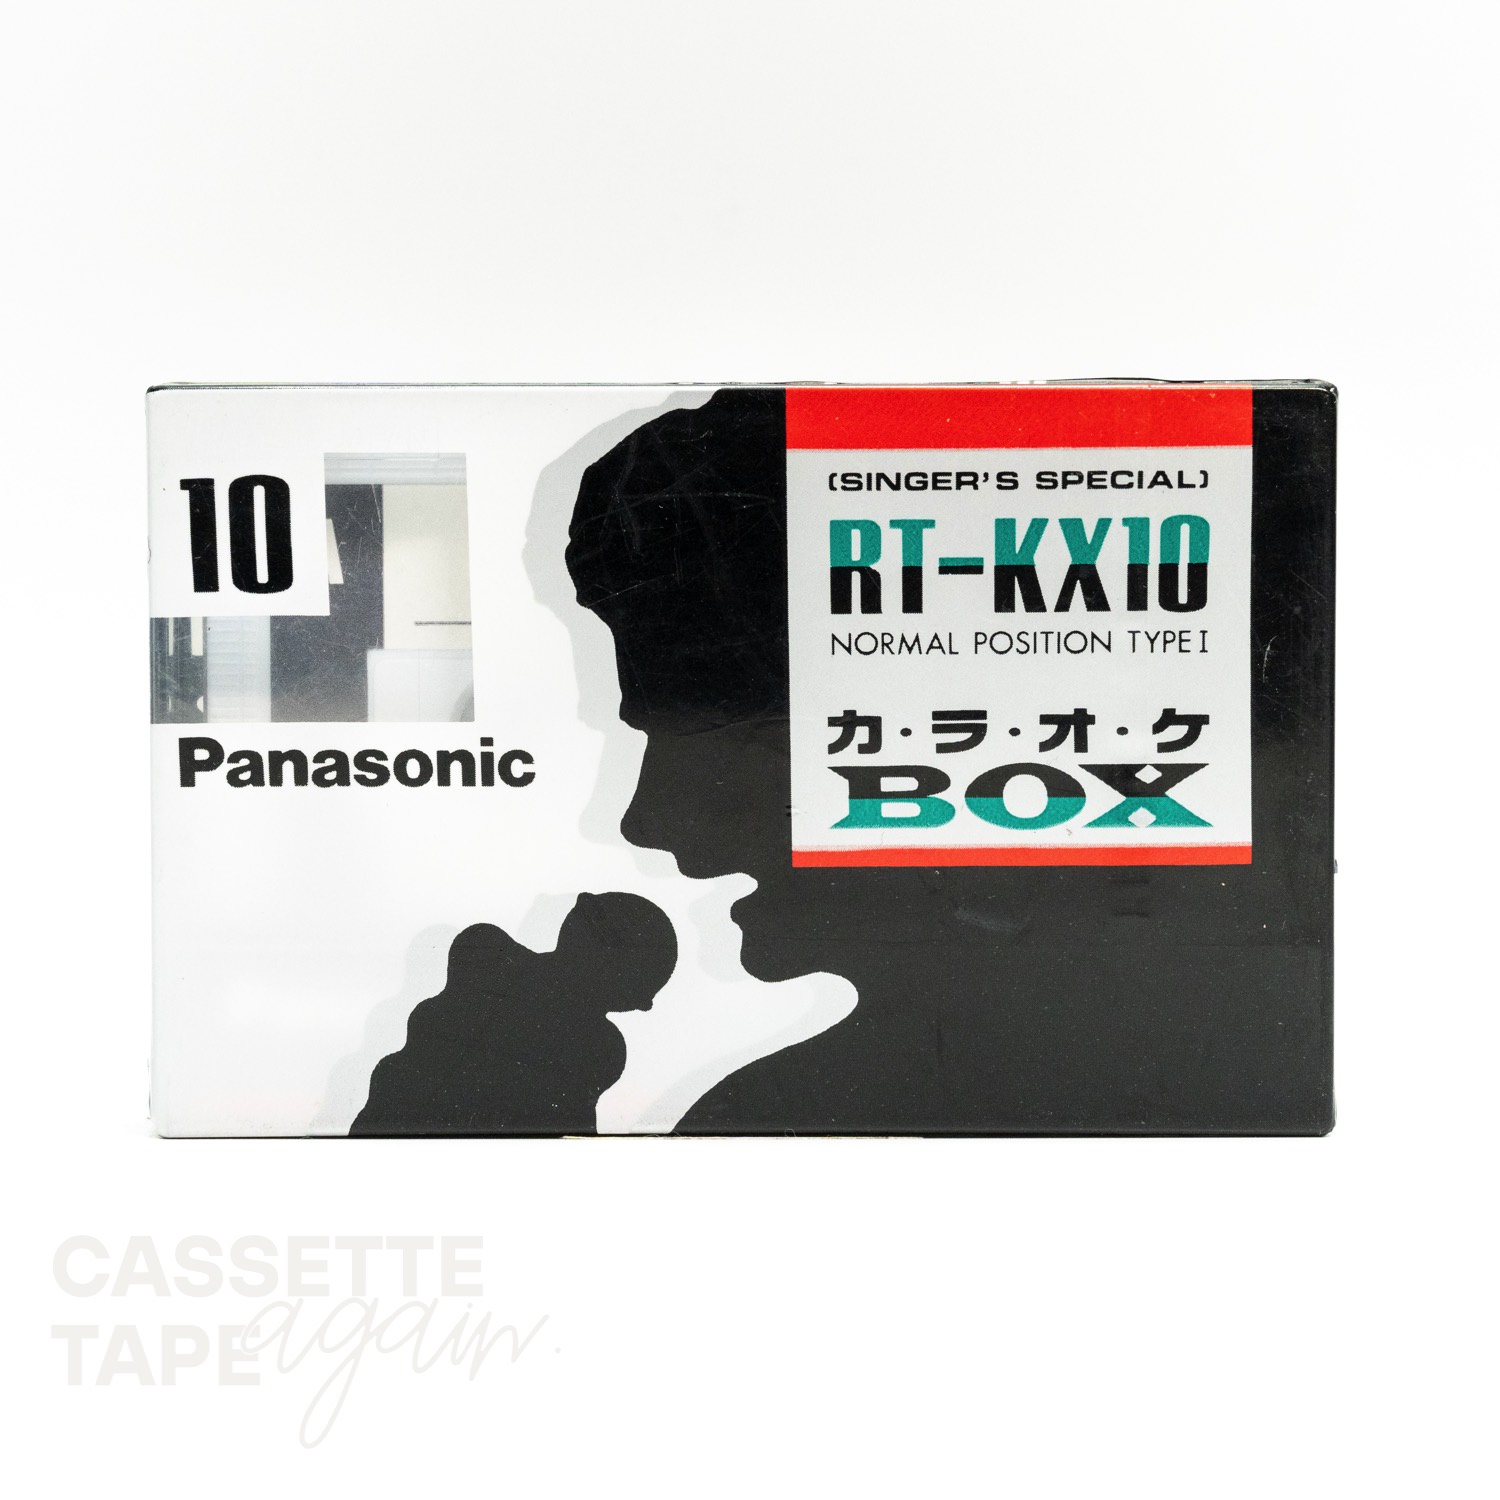 RT-KX10 10 / Panasonic(ノーマル)